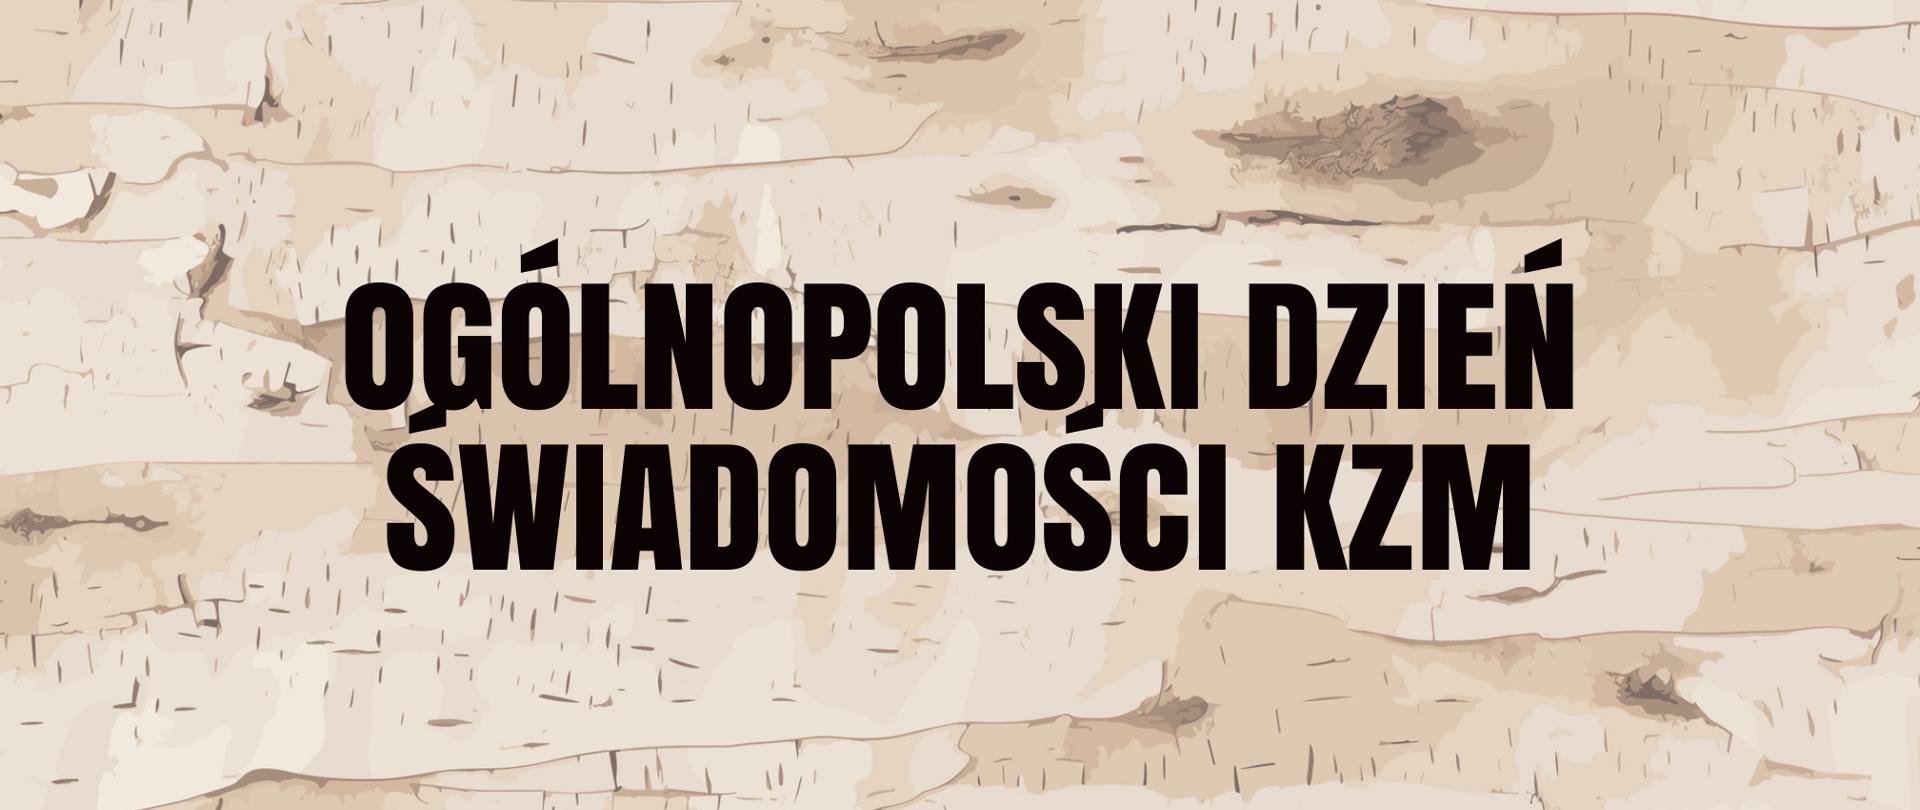 Na grafice jest napisane: Ogólnopolski Dzień Świadomości KZM. Tło jest brązowe.